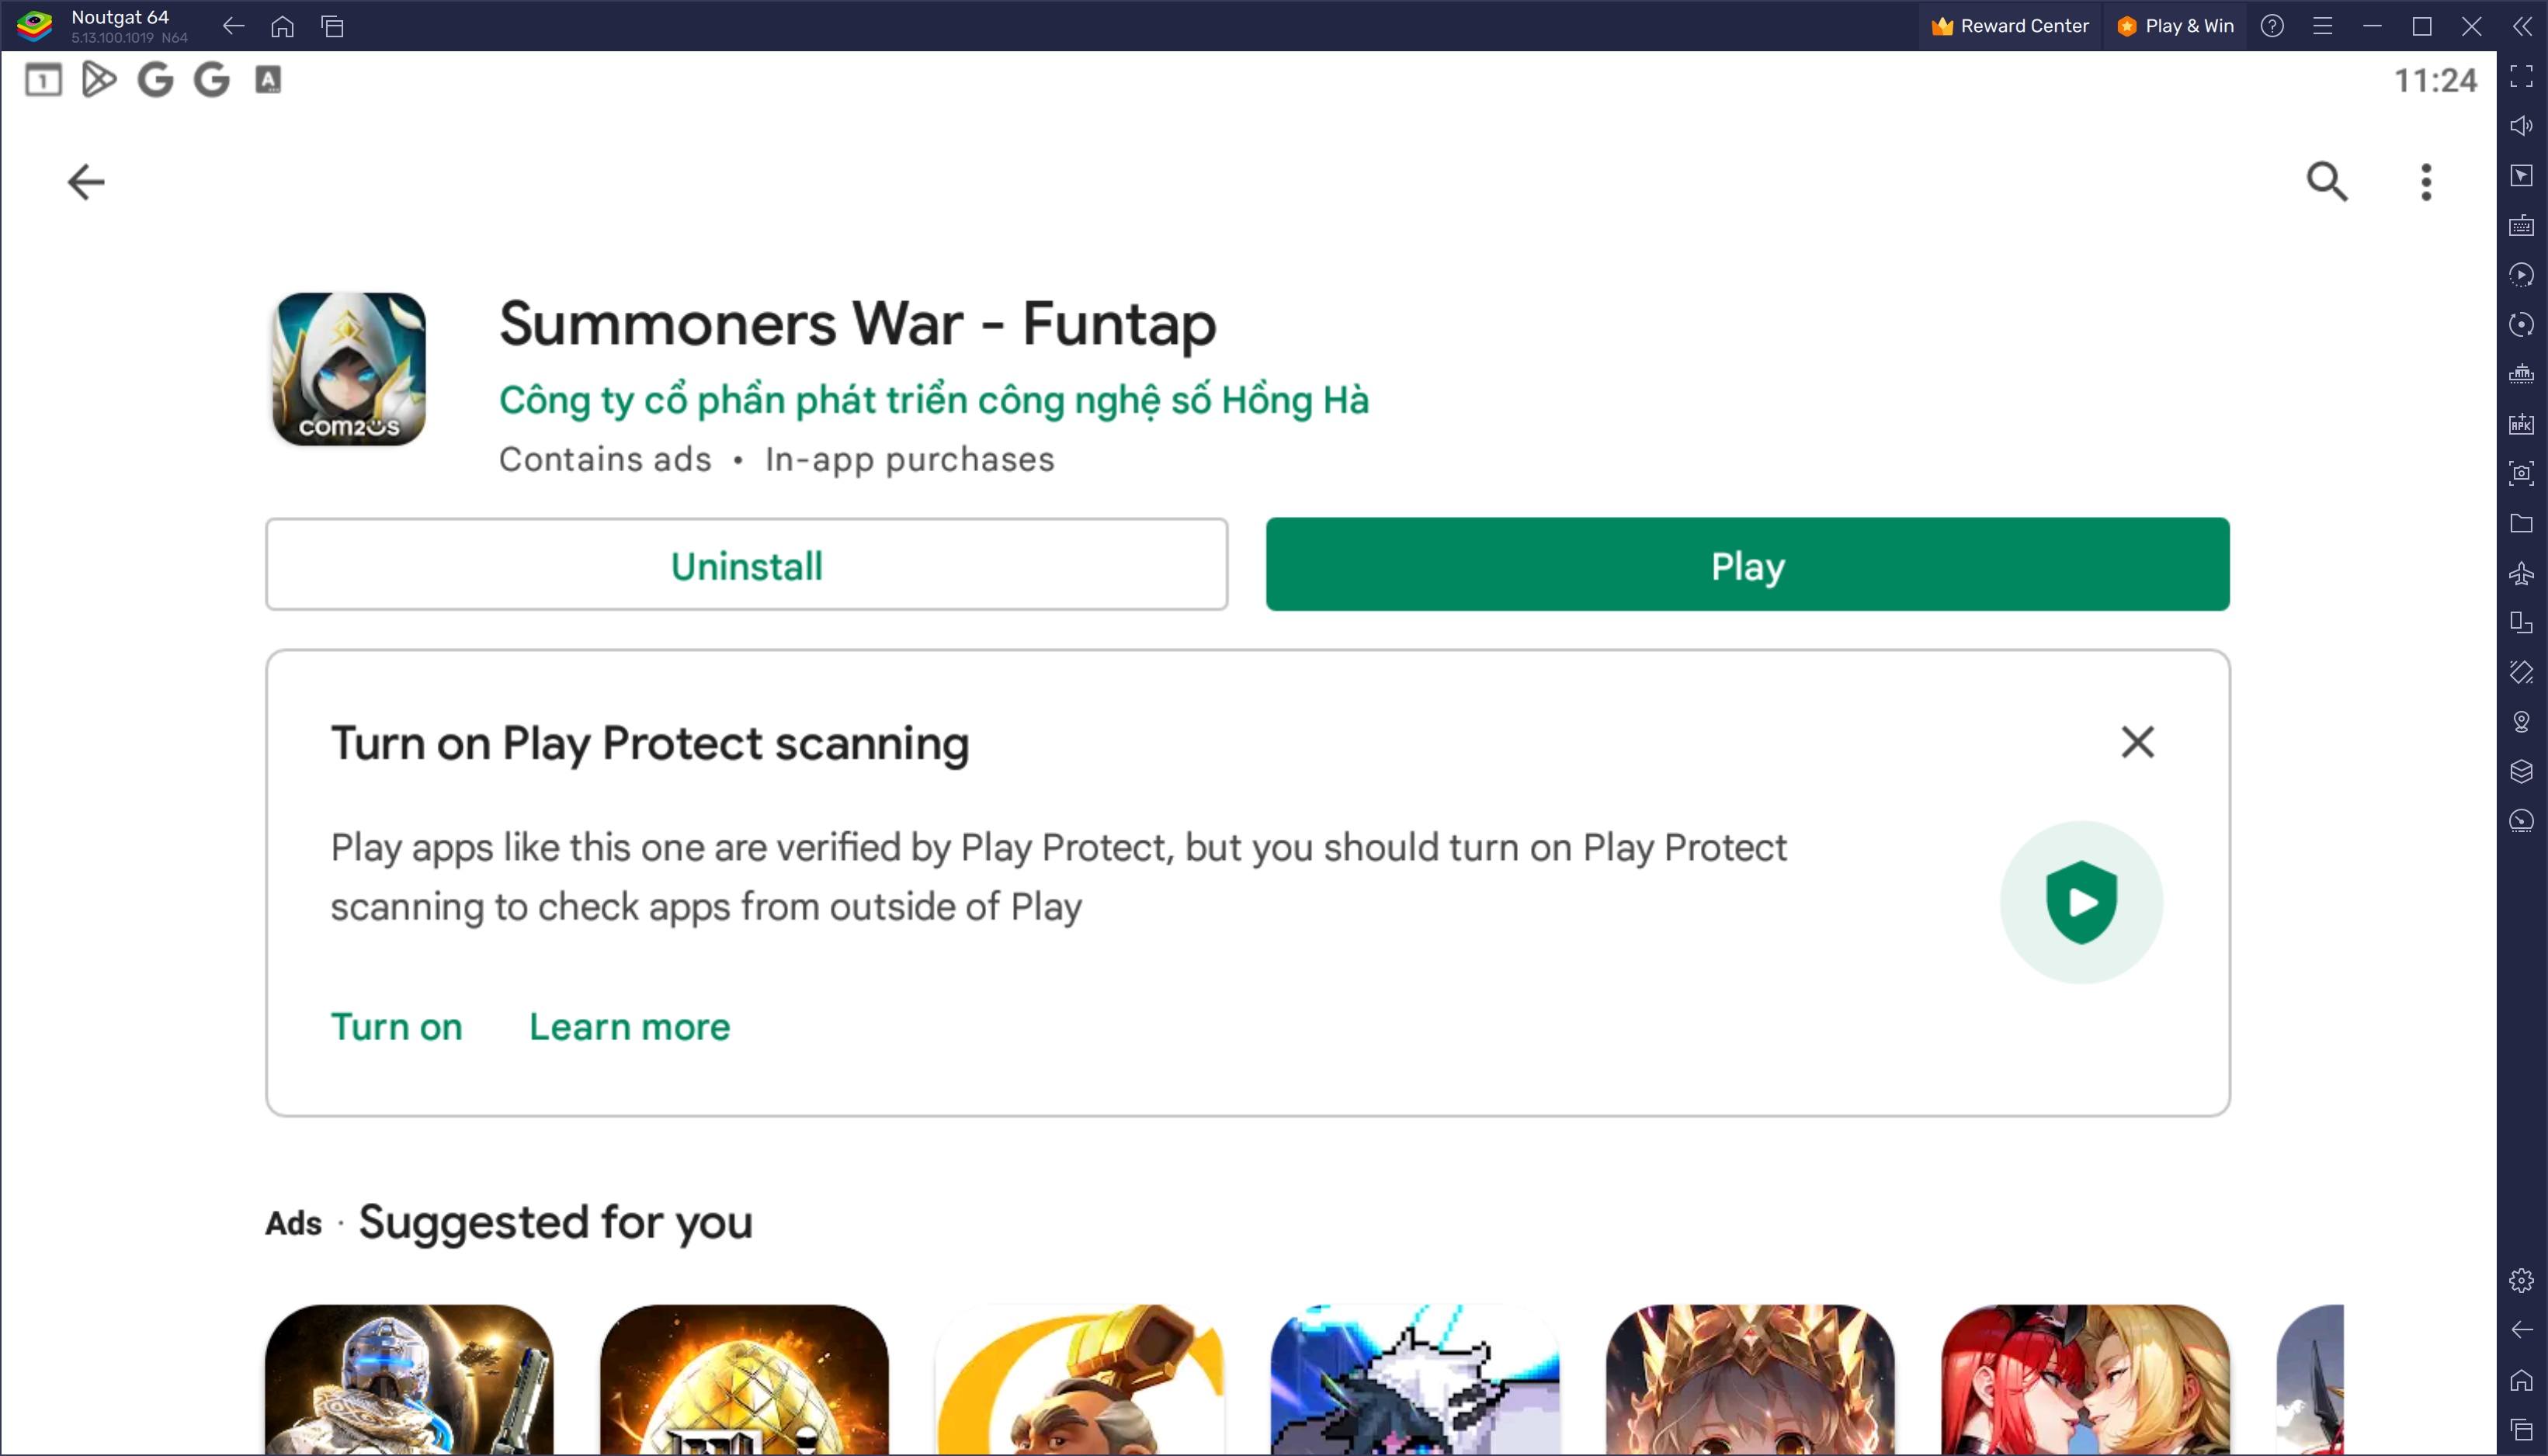 Hướng dẫn cách chơi Summoners War - Funtap trên PC bằng BlueStacks